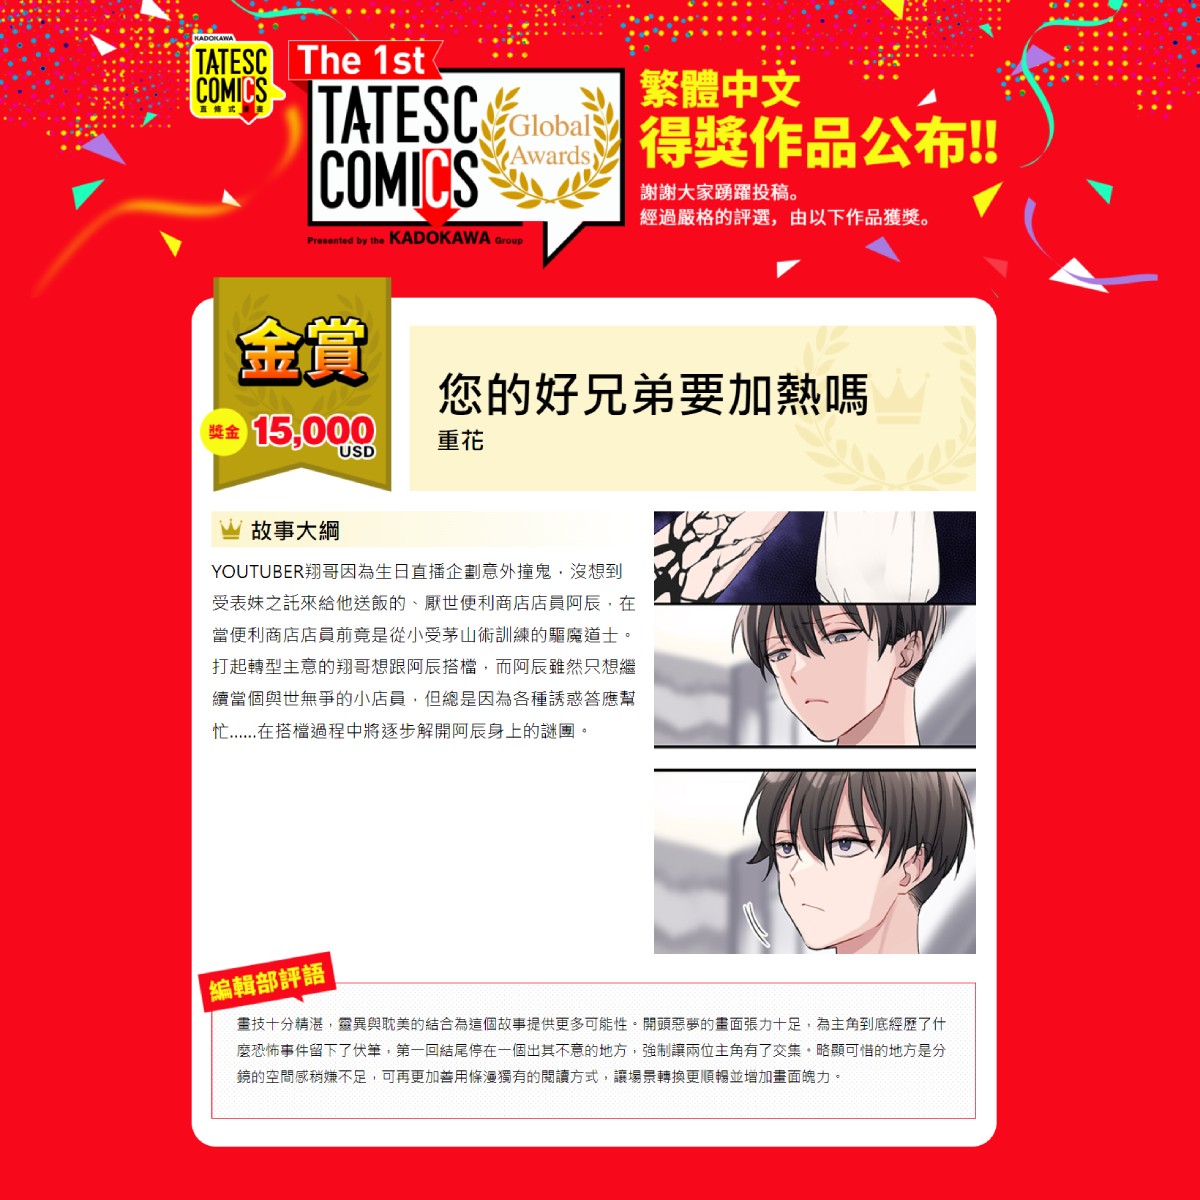 新聞圖4_「The 1st TATESC COMICS Global Awards」繁體中文【金賞】《您的好兄弟要加熱嗎》作者重花老師